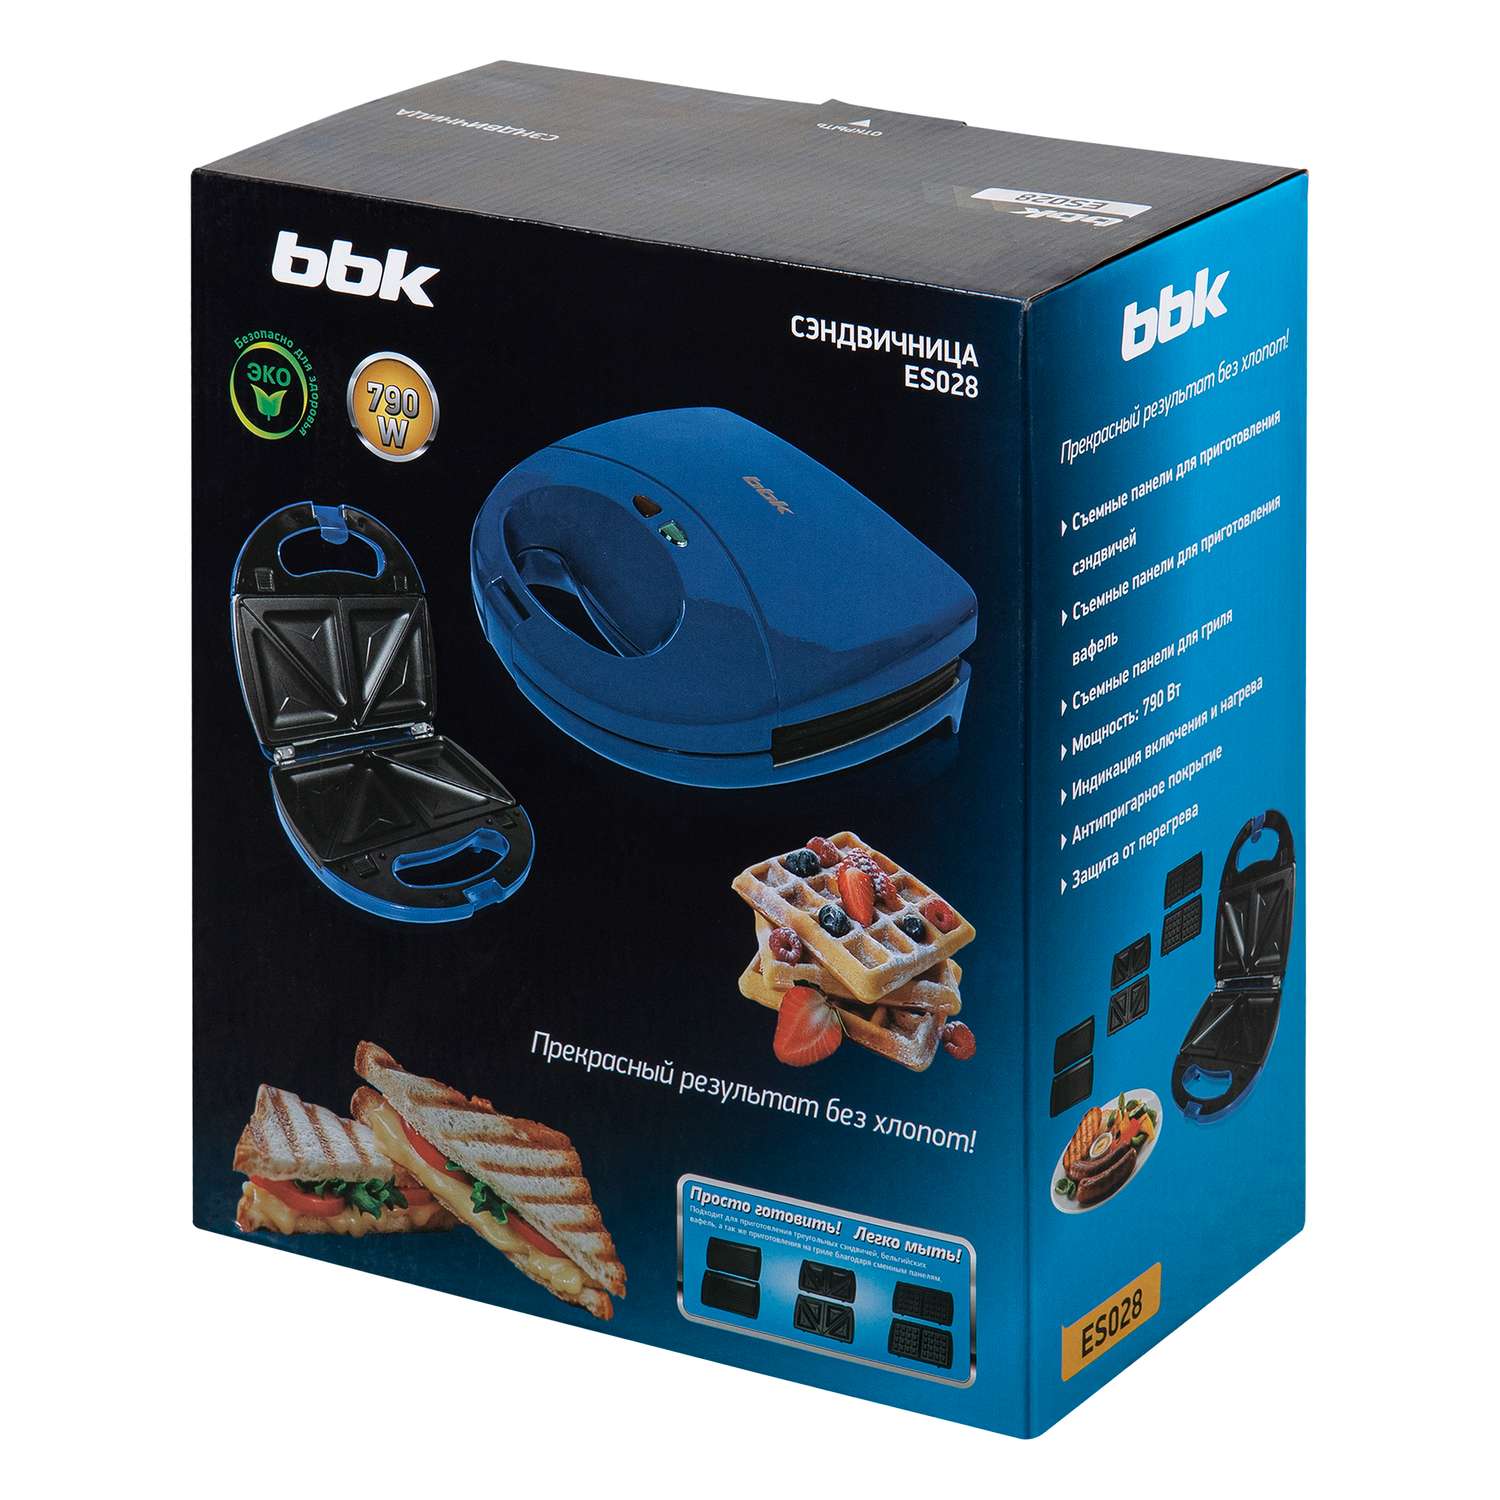 Сэндвичница BBK ES028 синяя мощность 790 Вт съемные панели в комплекте - фото 11